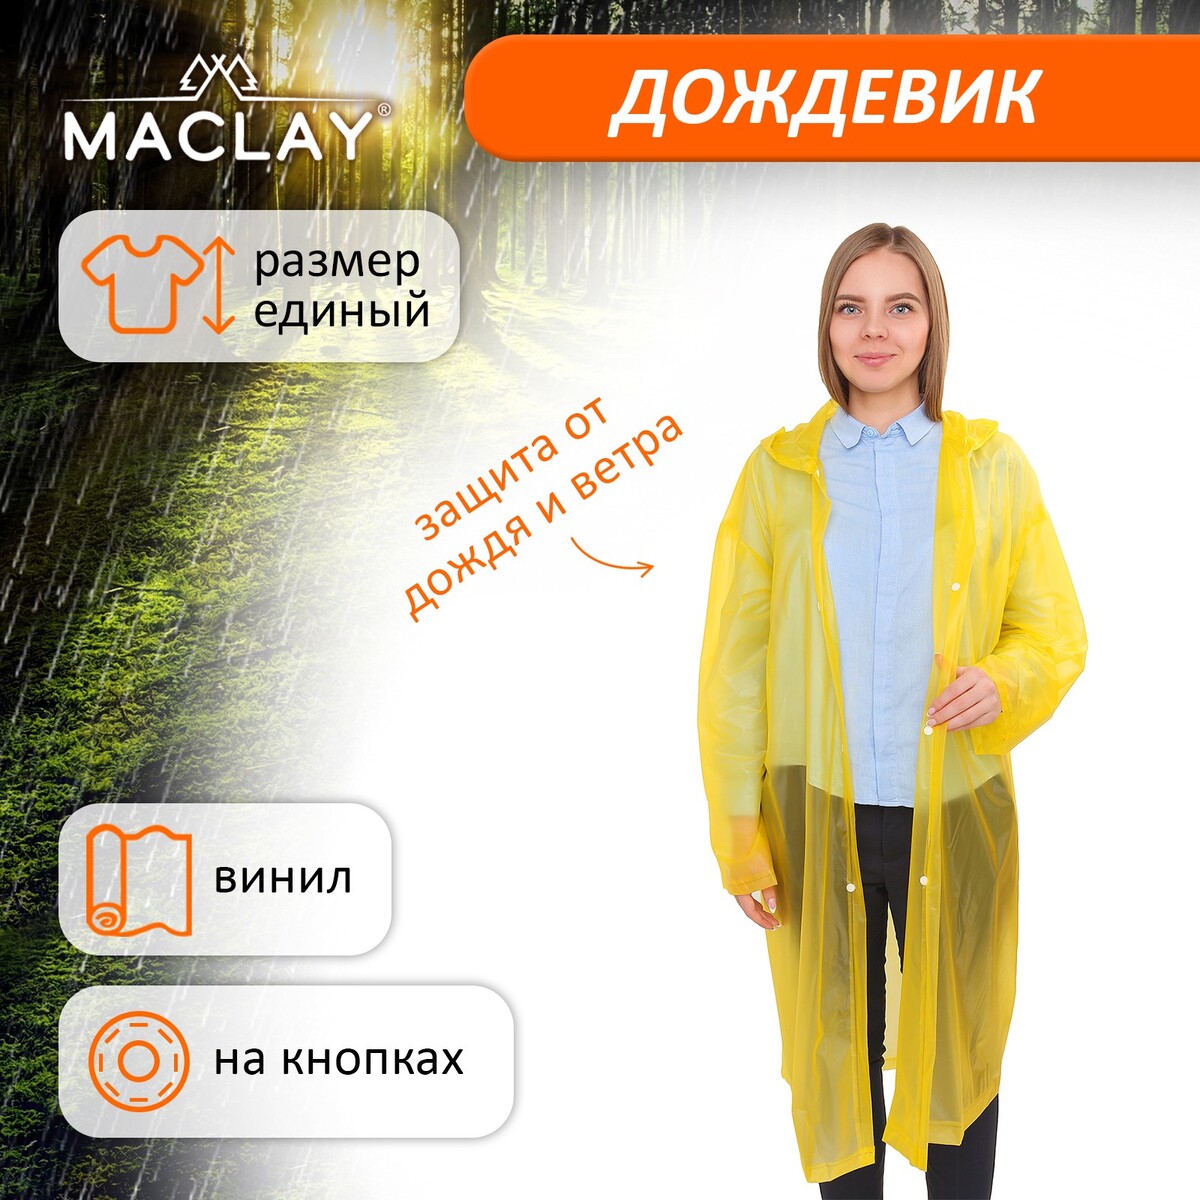 Дождевик-плащ maclay, универсальный, цвет желтый дождевик лотос